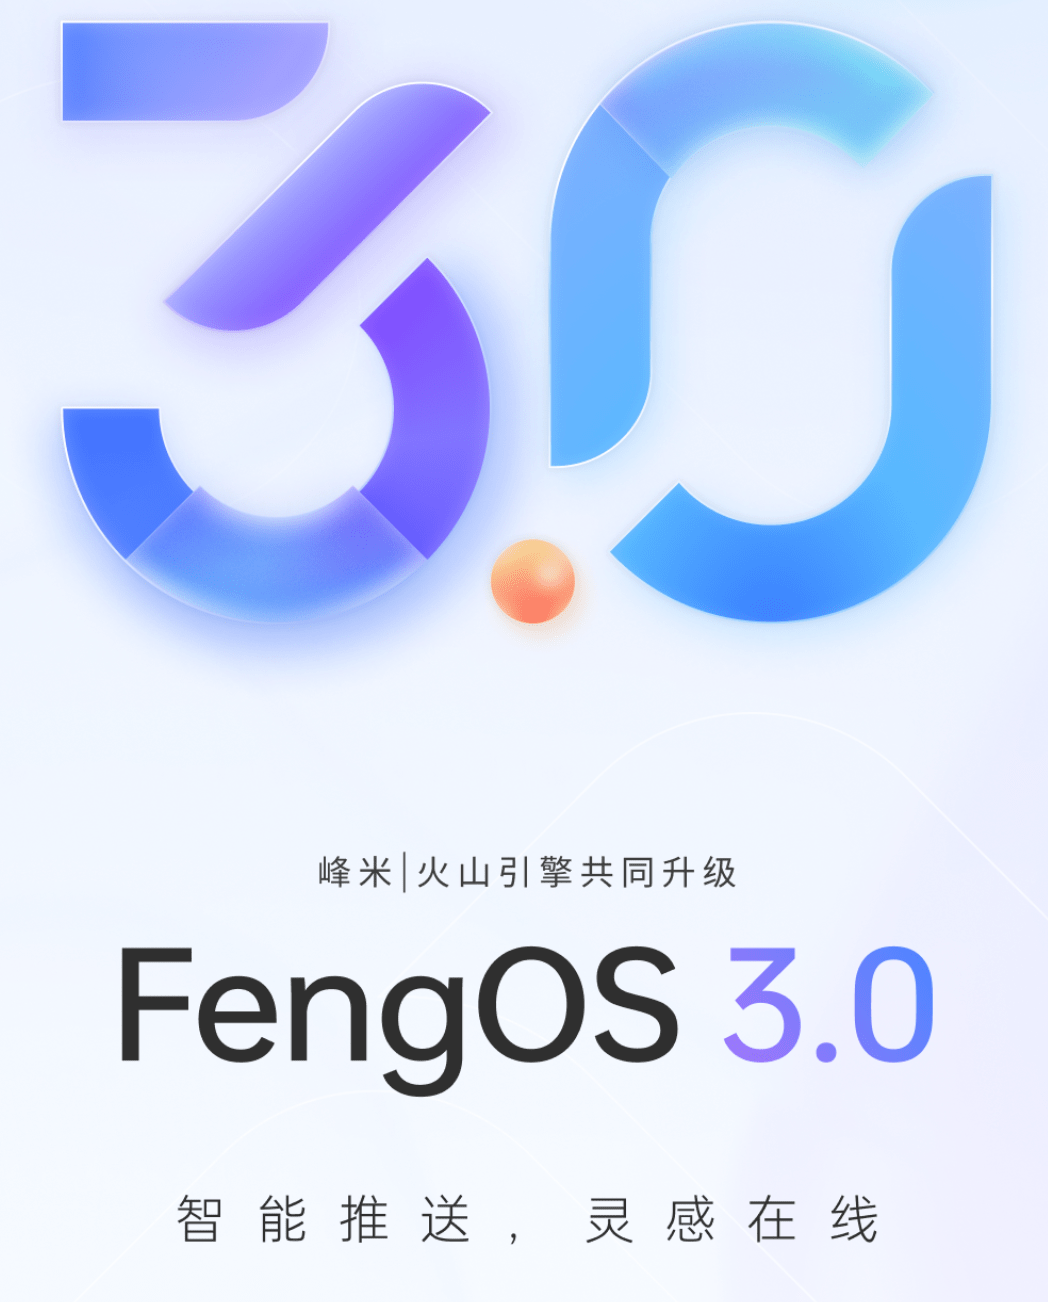 峰米投影仪FengOS 3.0上线：搭载抖音同款推荐算法 可快速识别用户的喜好